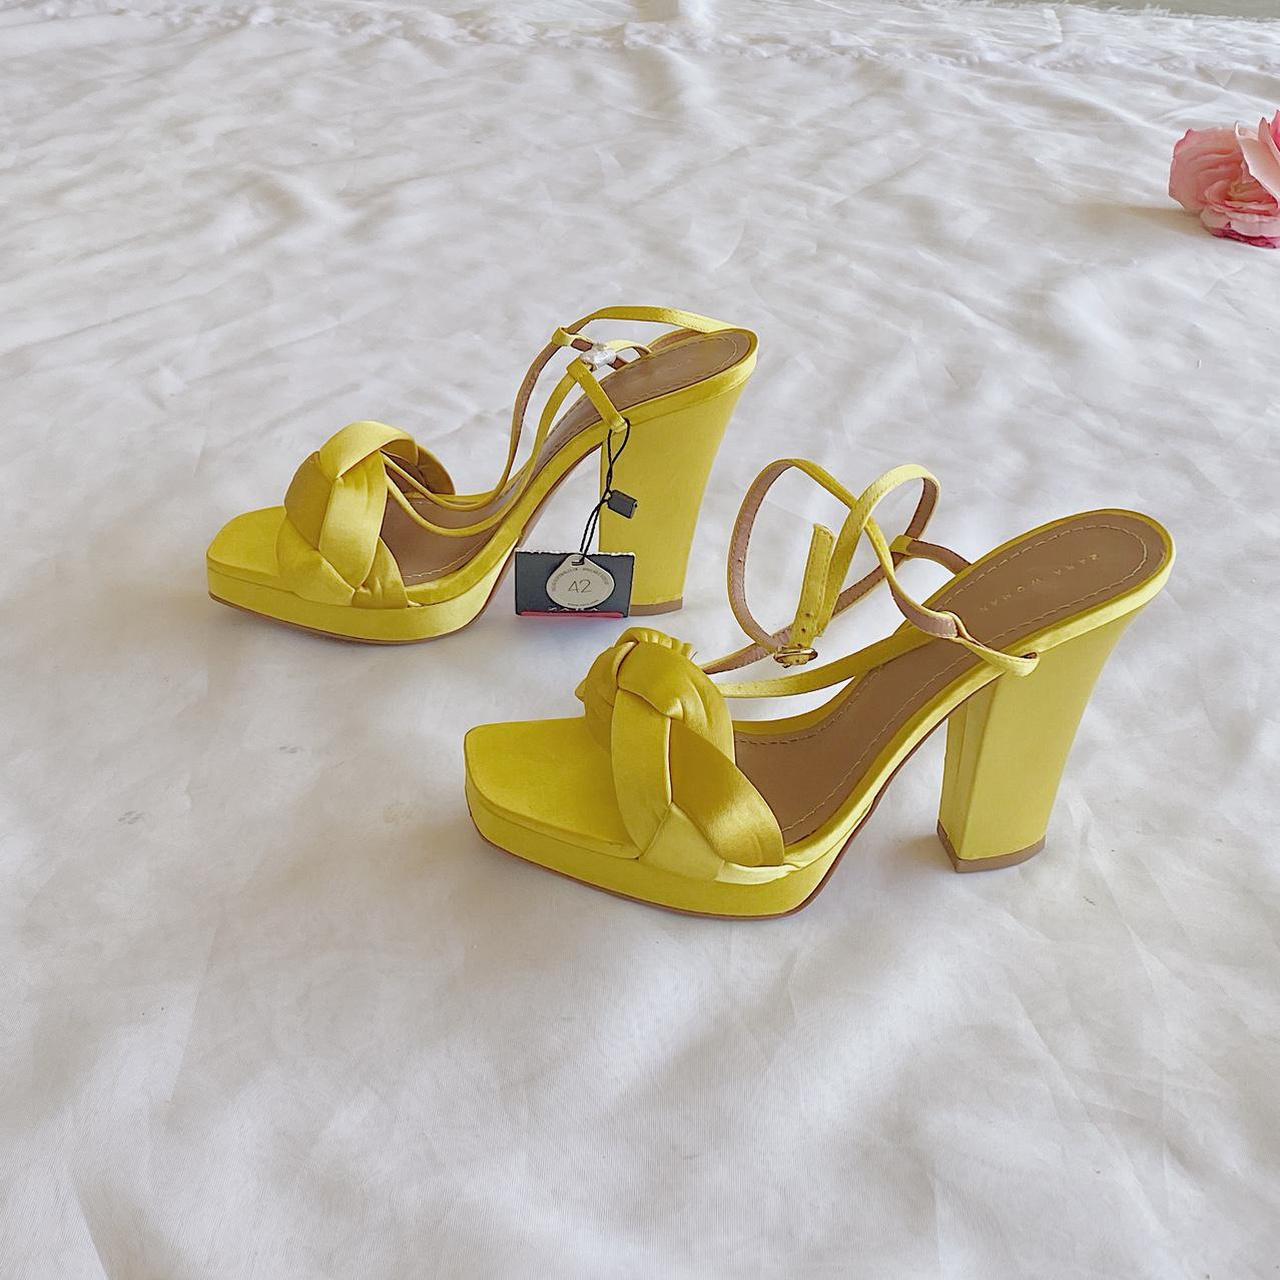 Product Image 2 - Mustard Zara Heels
4.5 inch heels